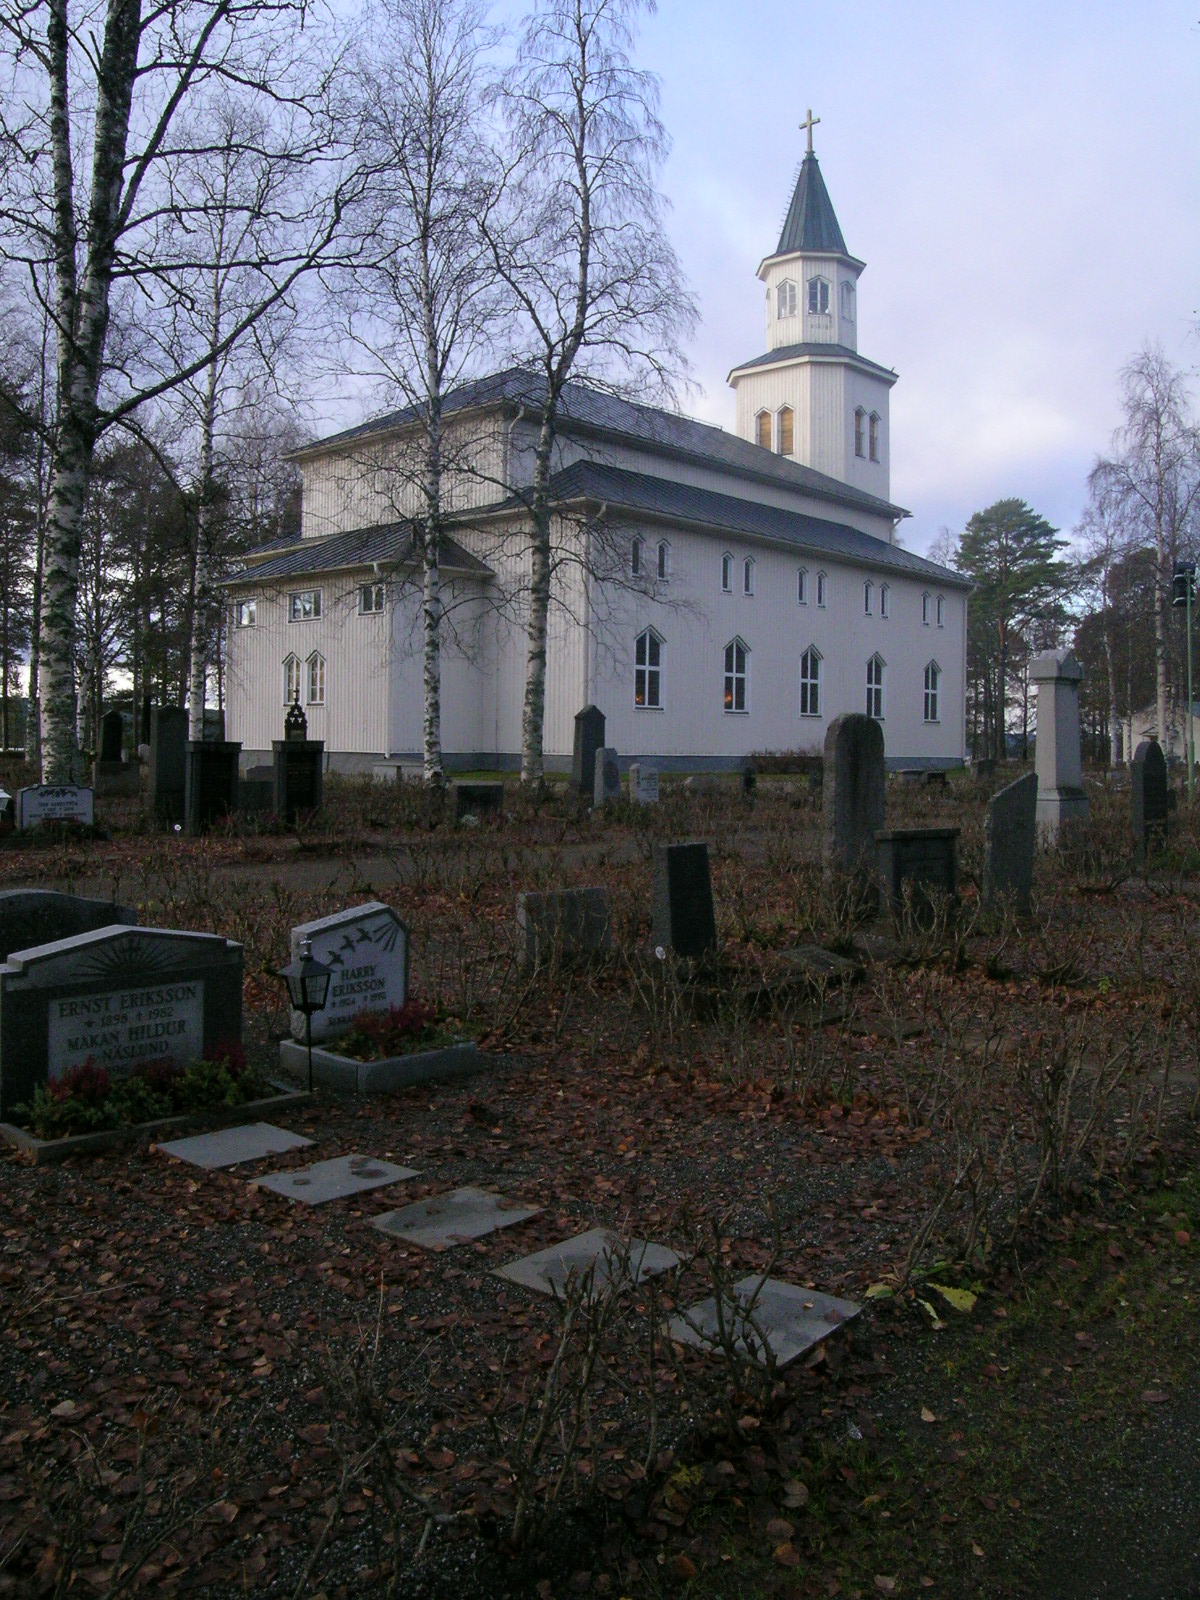 Tåsjö kyrka med omgivande kyrkogård, vy från nordöst. 

Bilderna är tagna av Martin Lagergren & Emelie Petersson, bebyggelseantikvarier vid Jämtlands läns museum, i samband med inventeringen, 2004-2005.